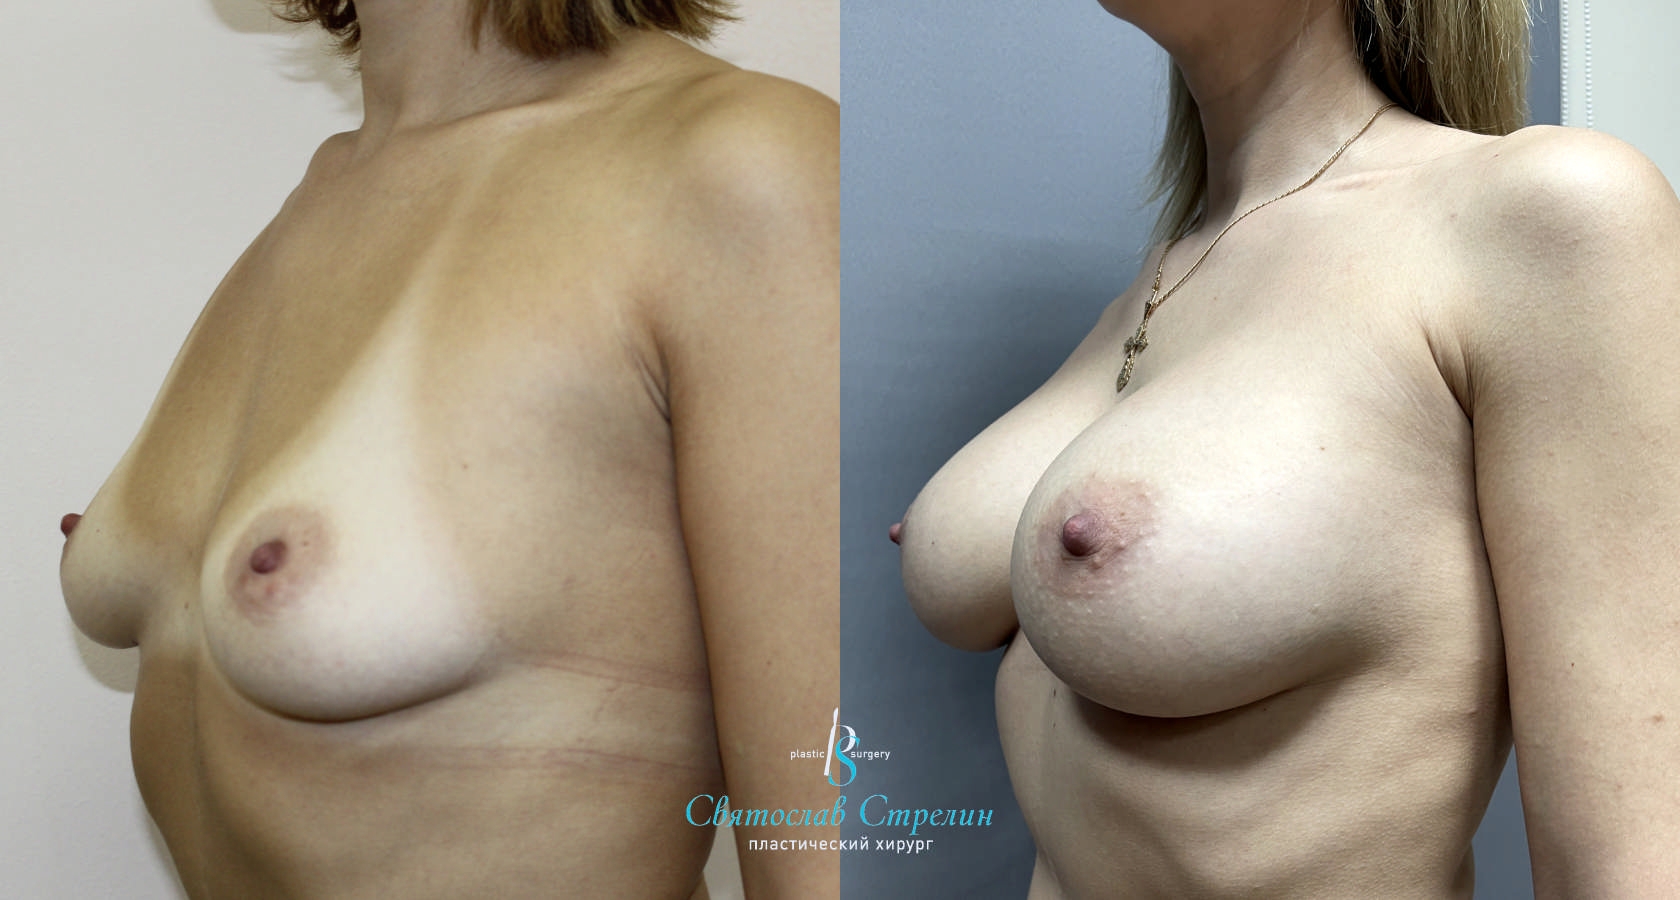 Увеличение груди, 2 года после операции, импланты Себбин 380 мл, анатомические, большая высота, высокая проекция, доступ подмышечный